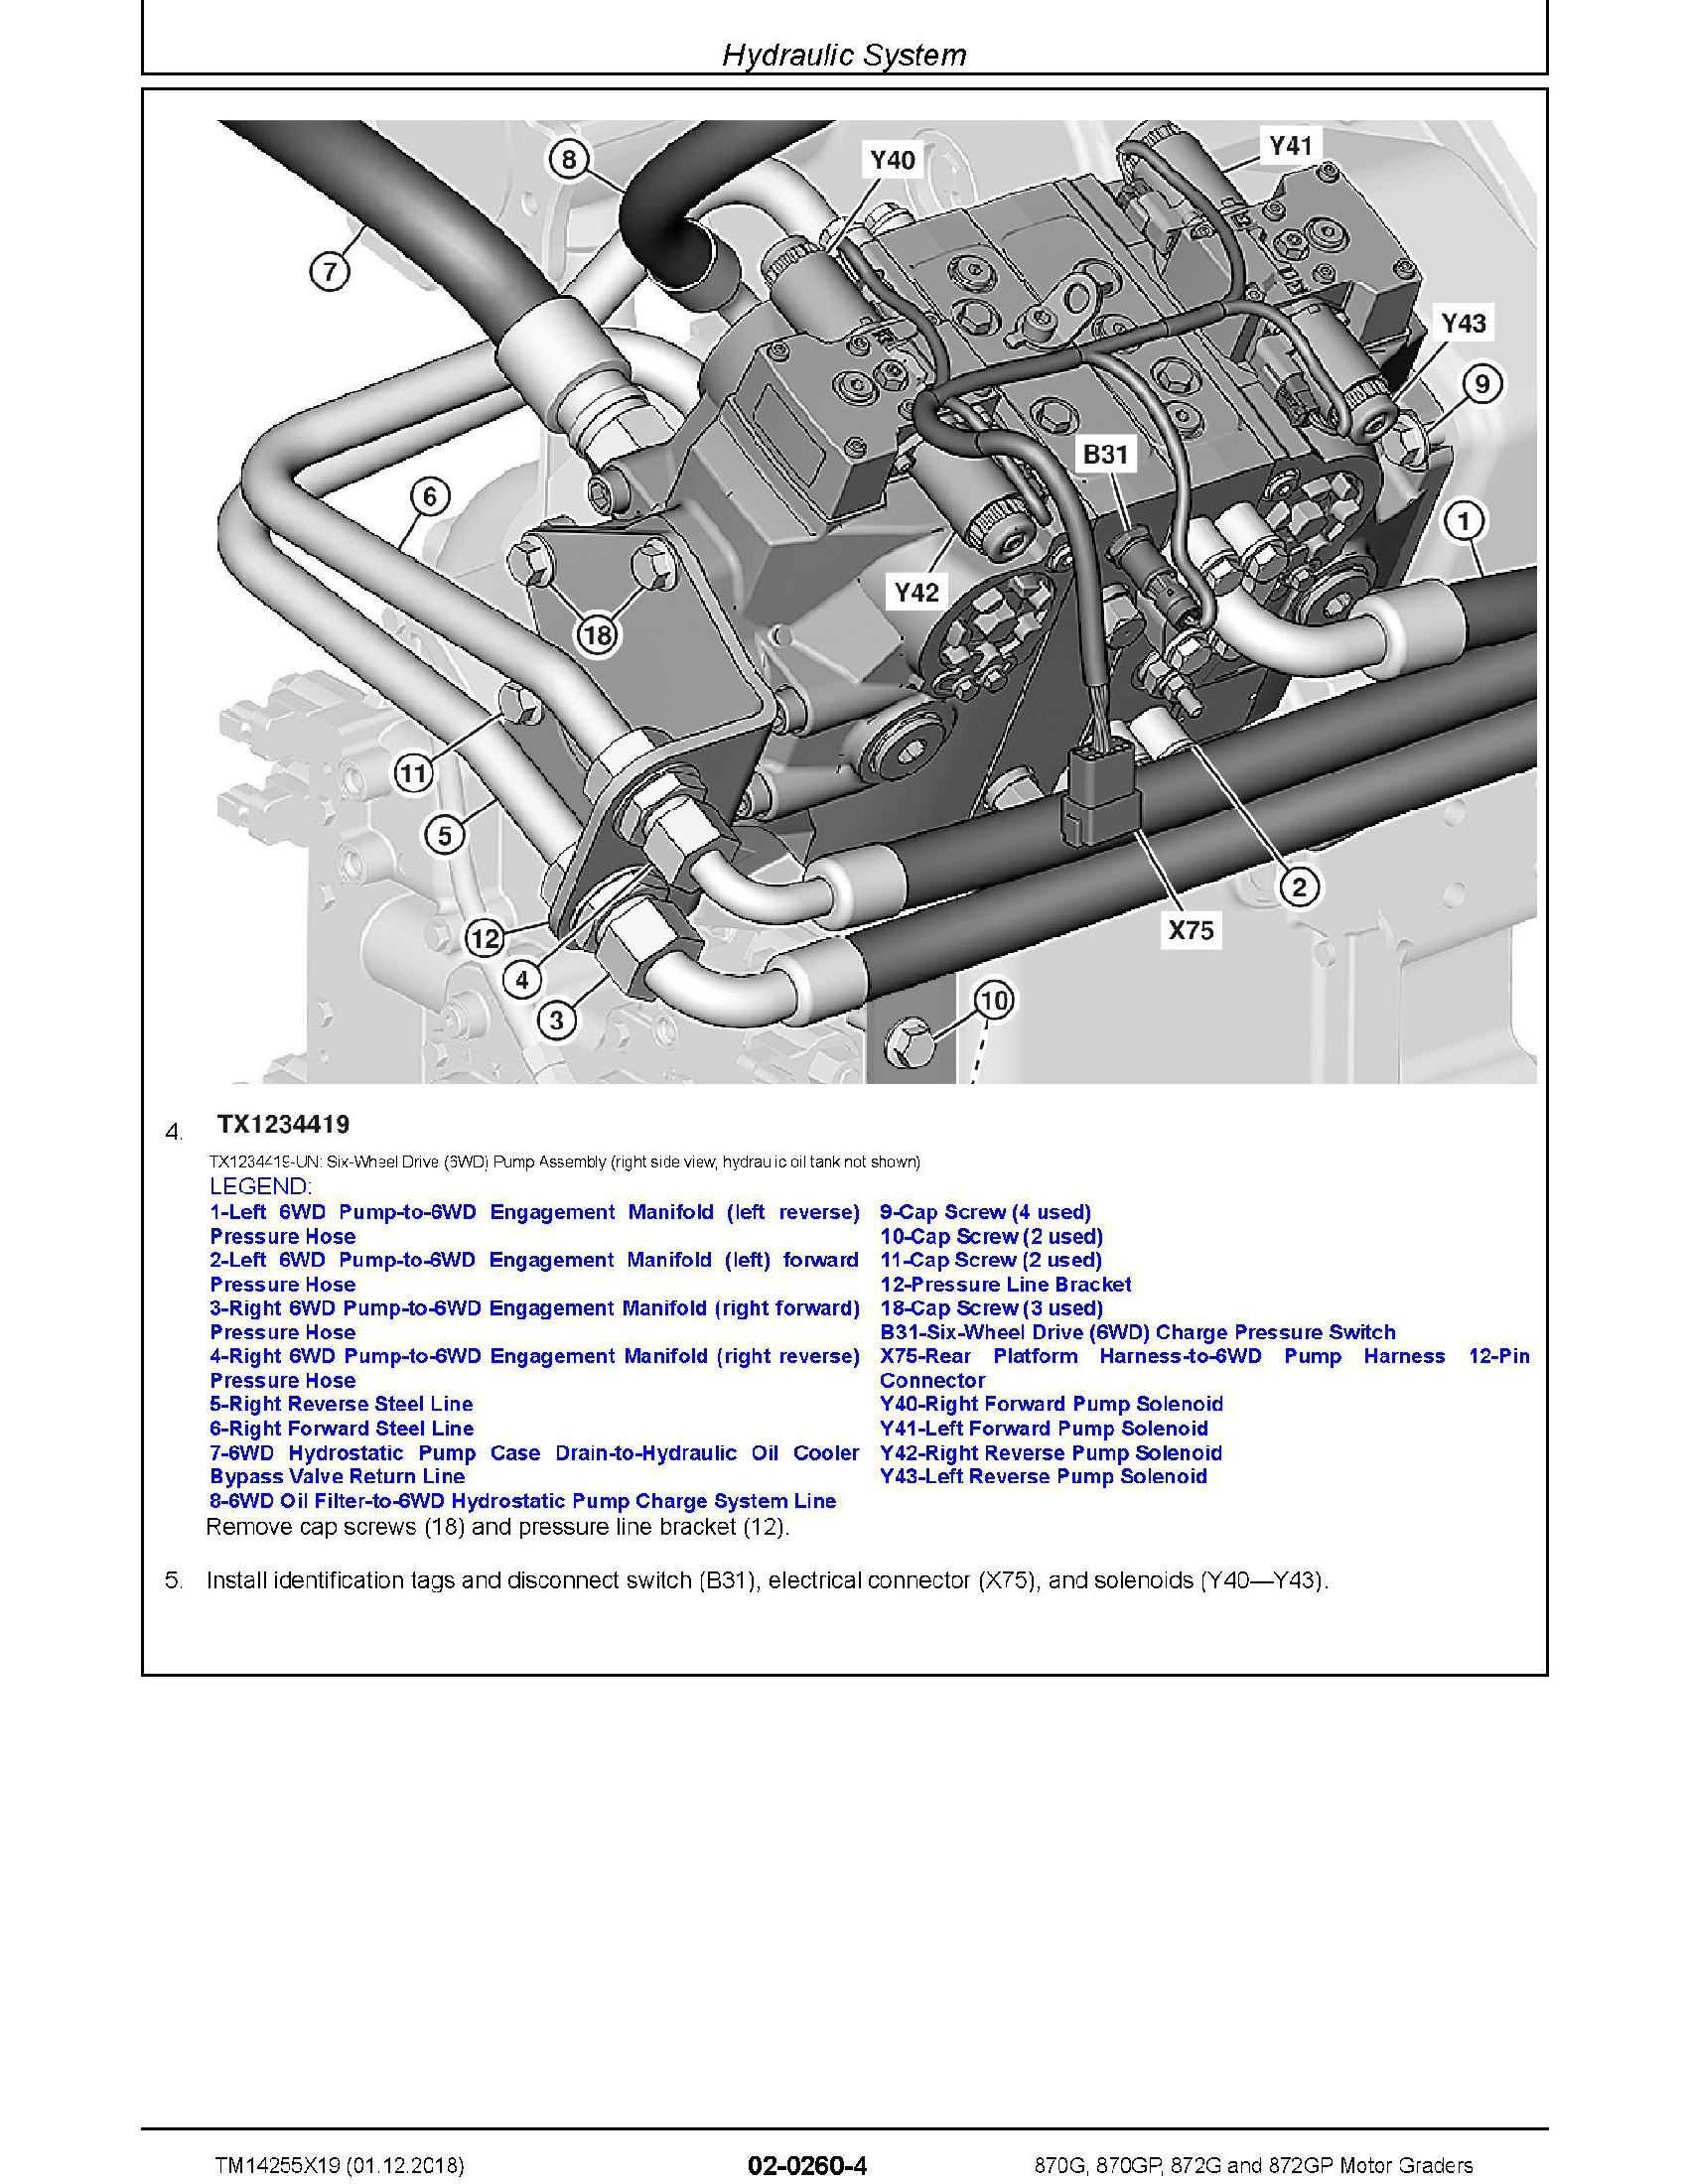 John Deere M23 manual pdf